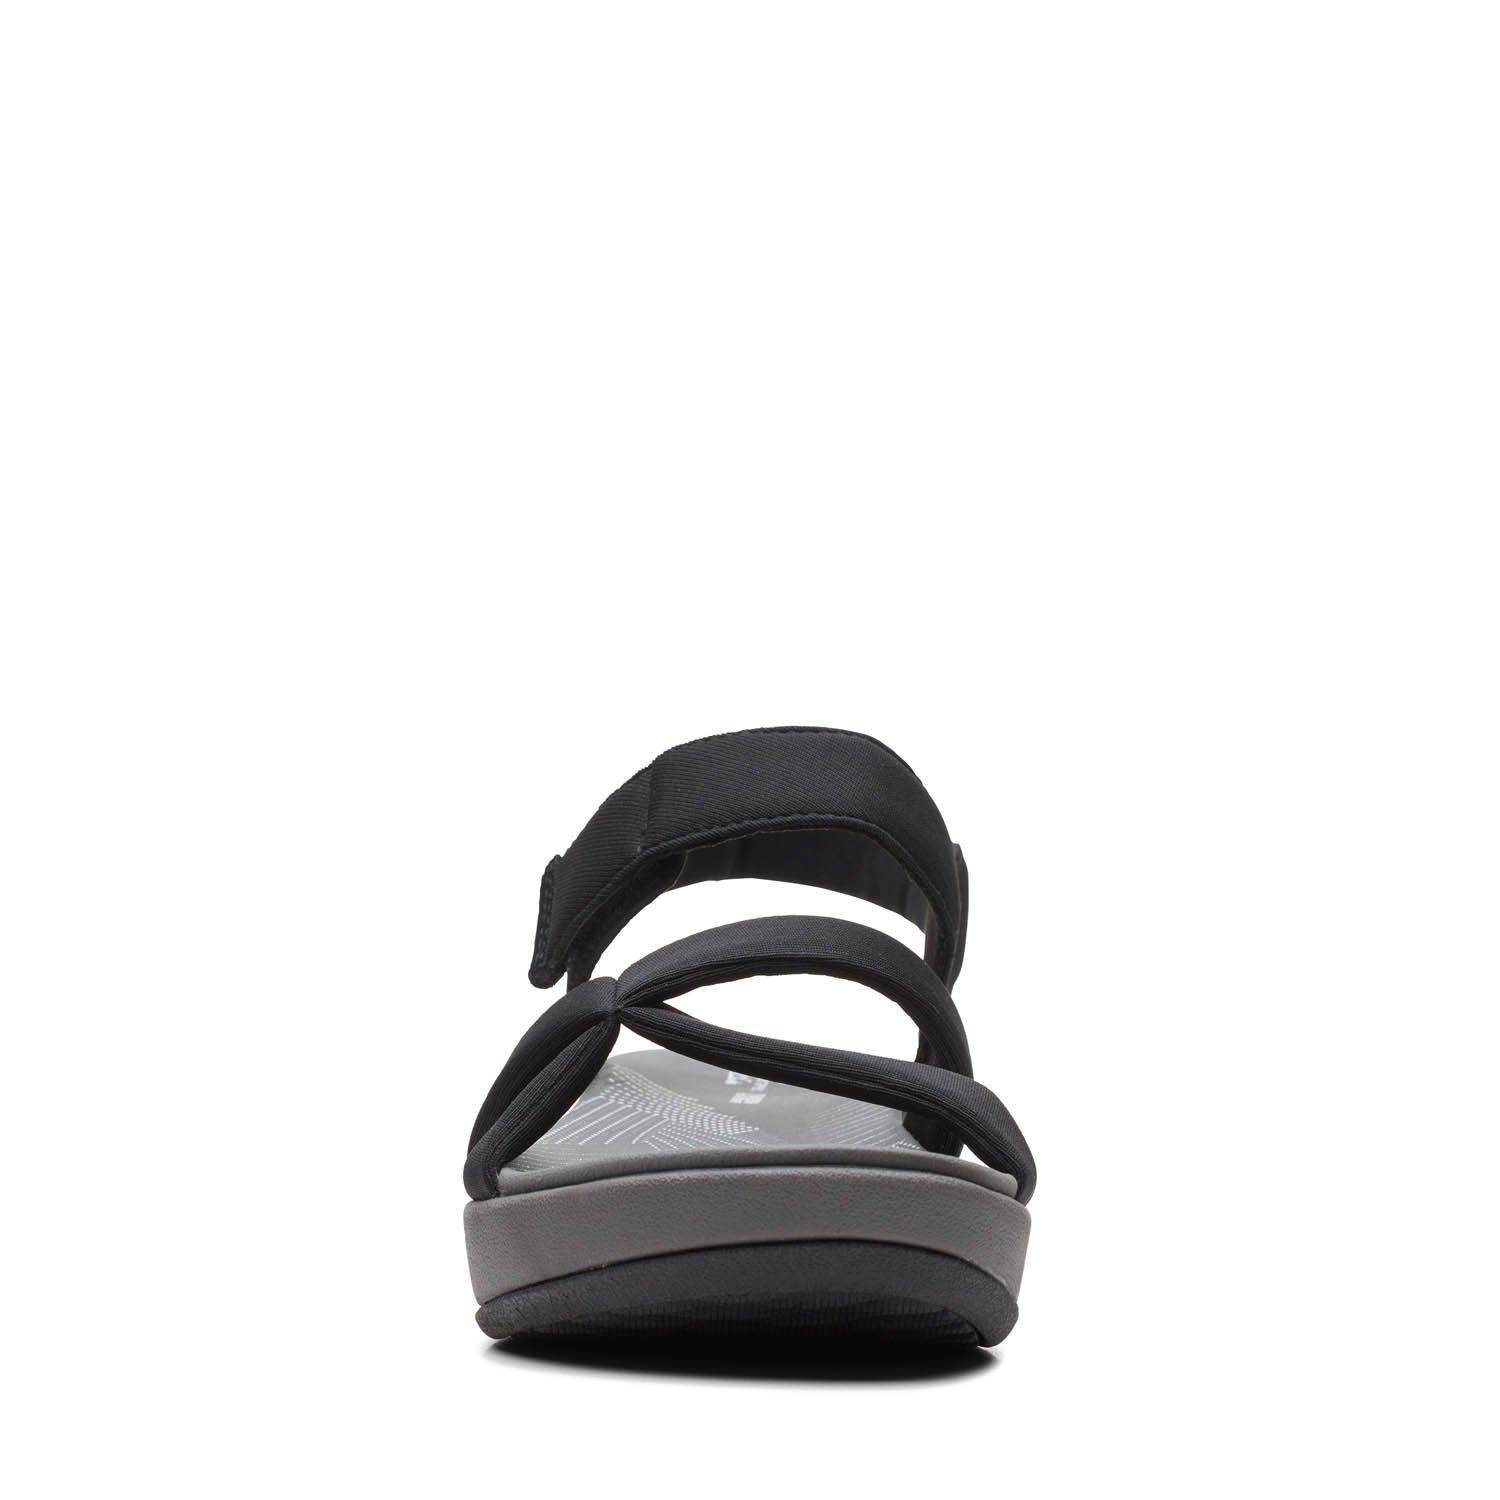 Женские сандалии Clarks (Arla Gracie 26159148), черные, цвет черный, размер 37.5 - фото 5